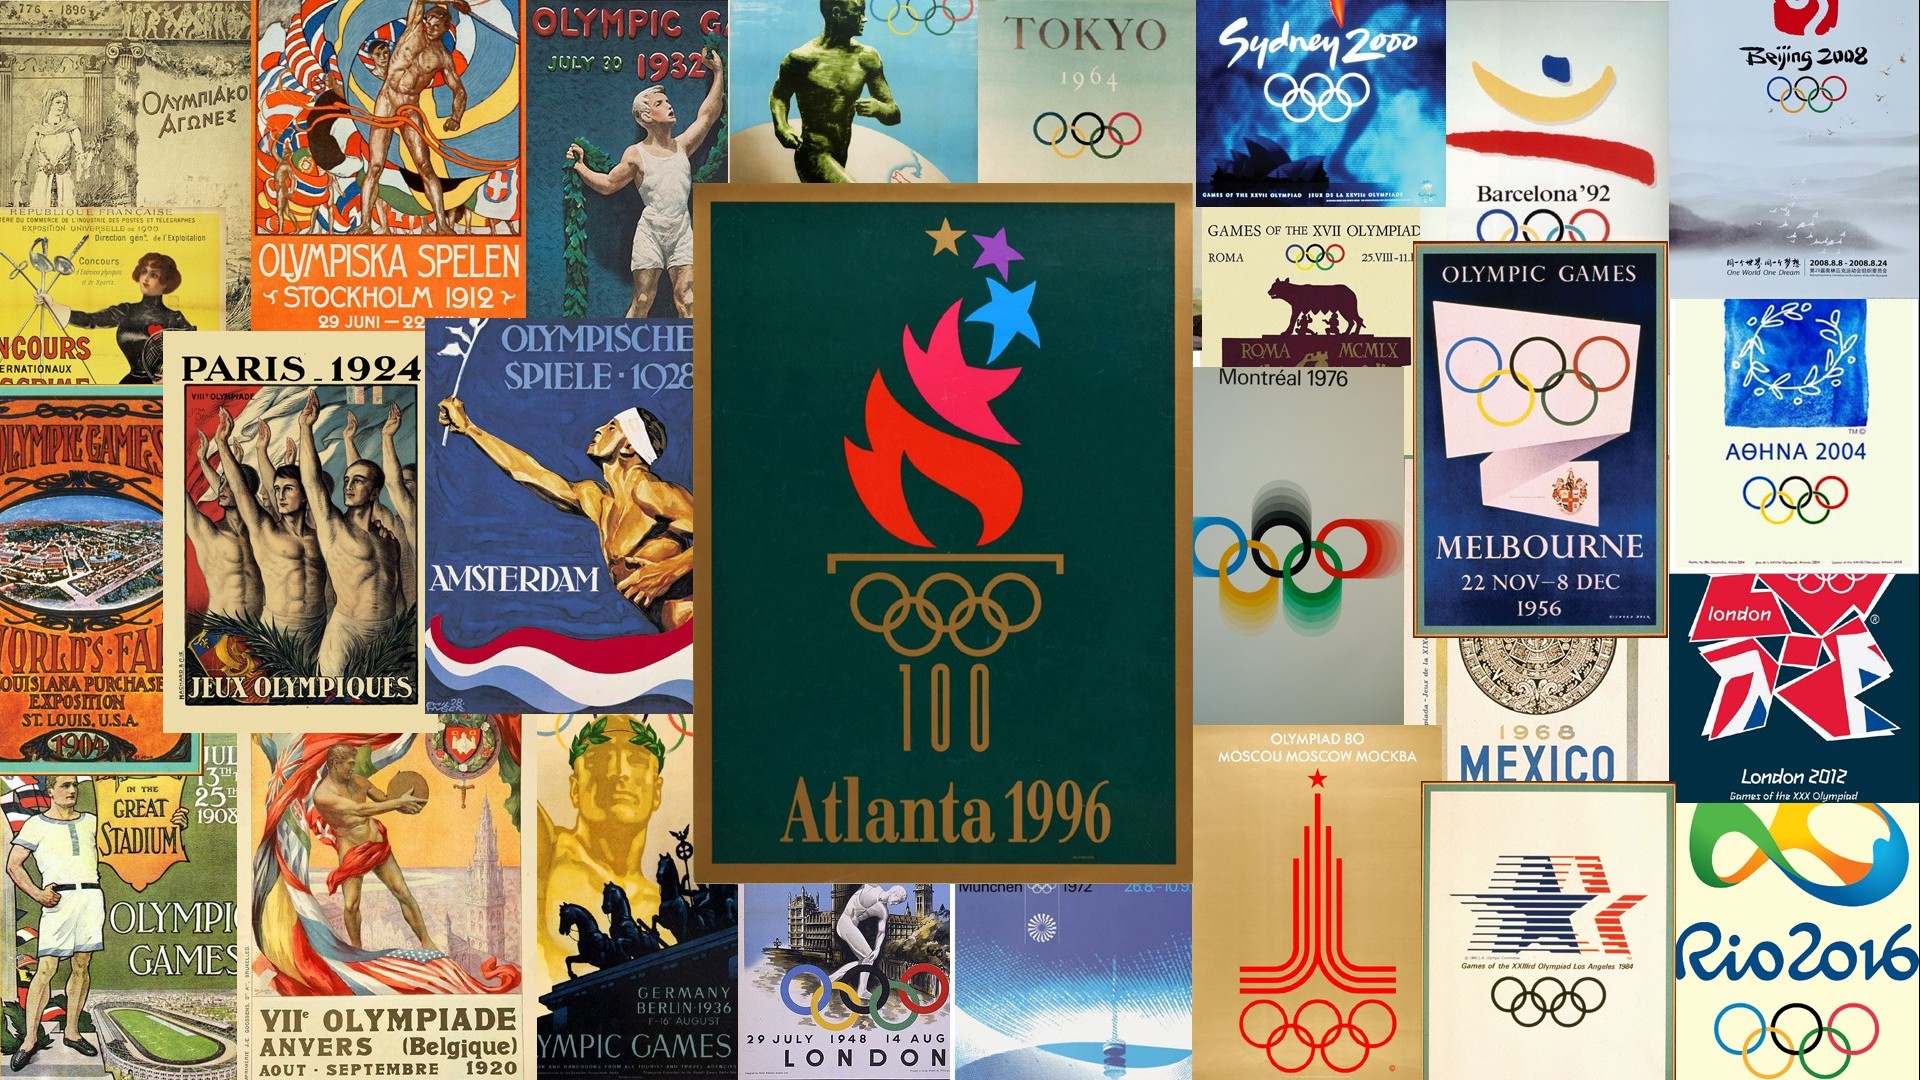 140 év sport - Szubjektív ráhangolódás a tokiói olimpiára - 3. rész 1996 Atlanta